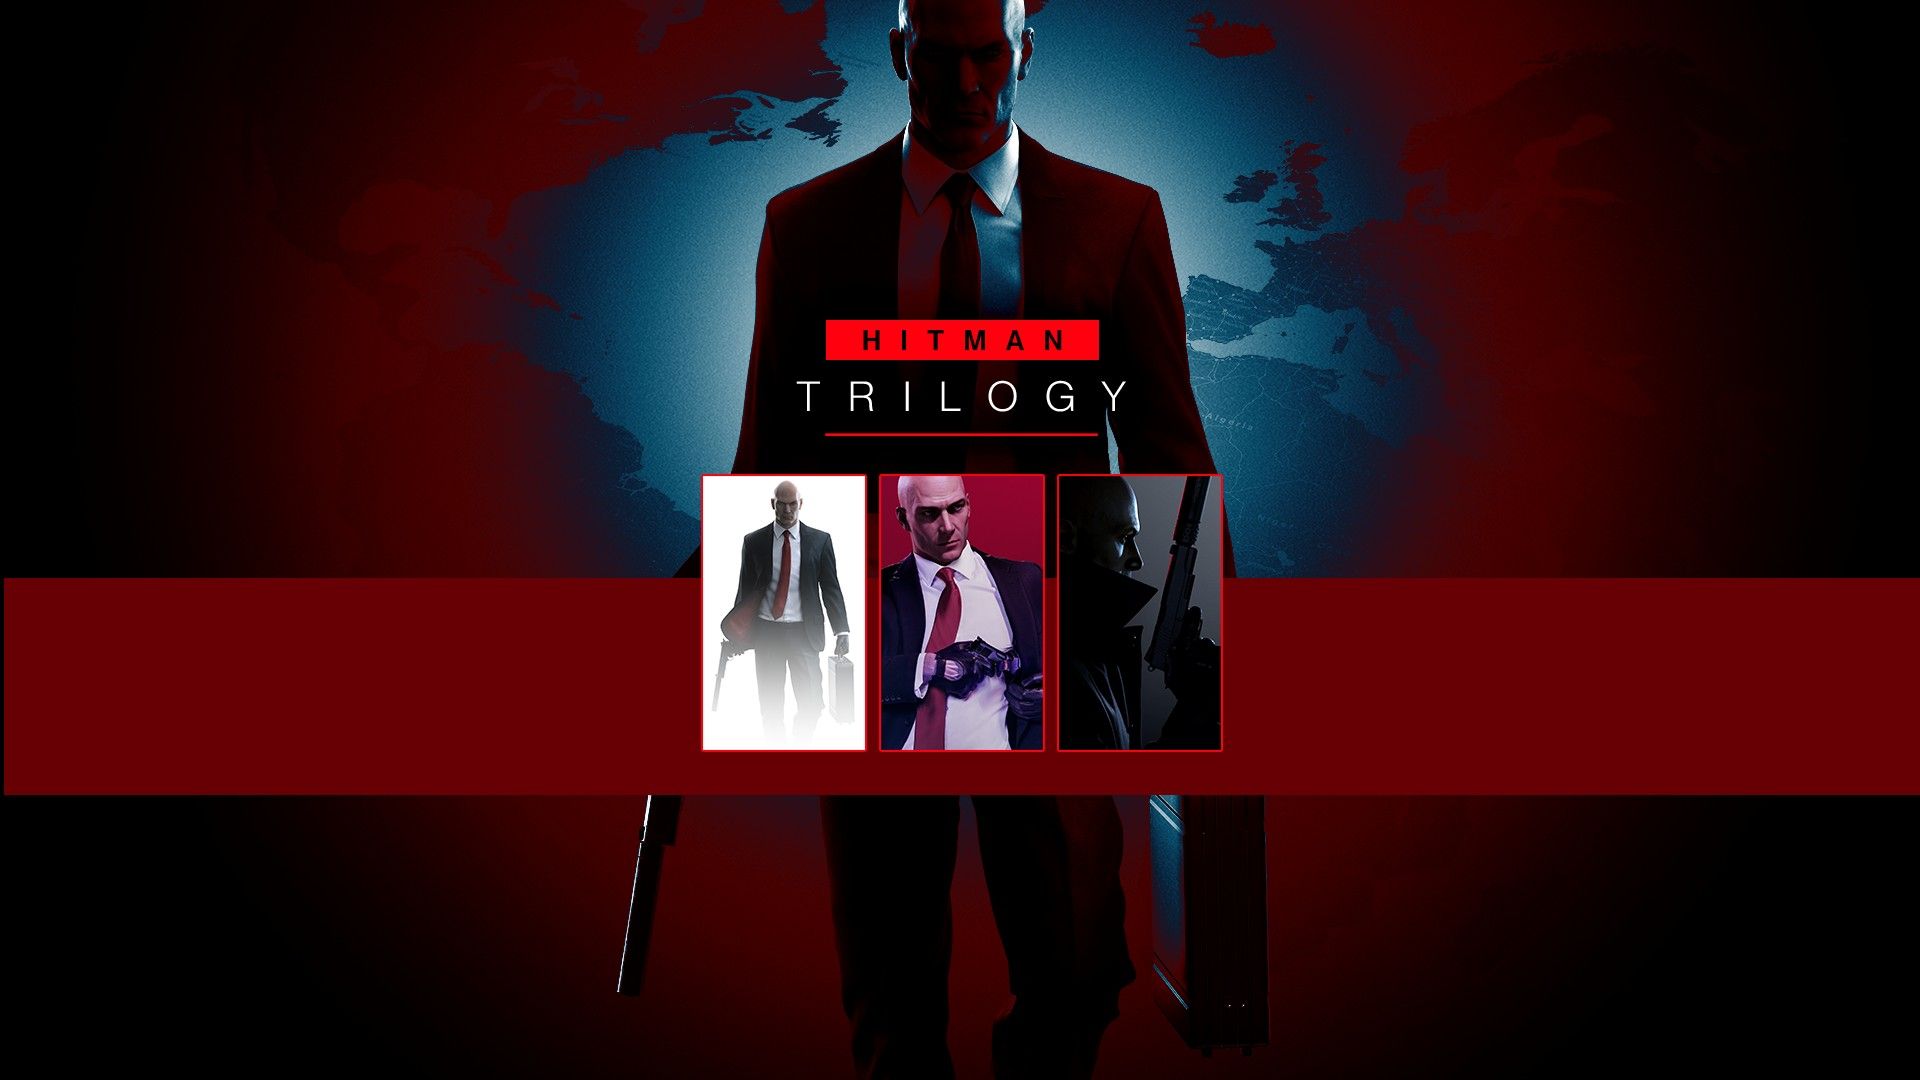 Hitman Trilogy Release Time